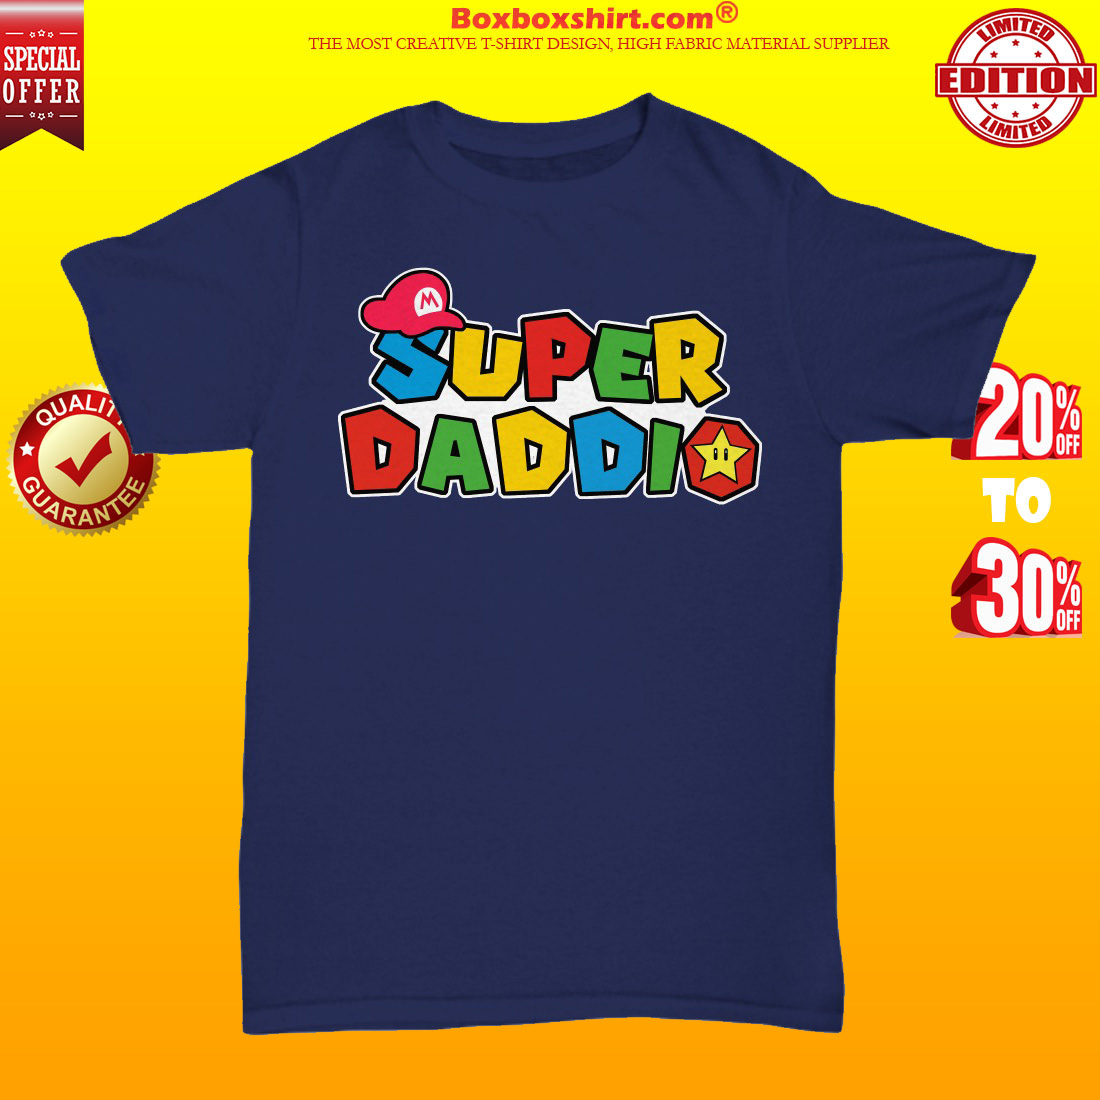 Super daddio unisex tee shirt